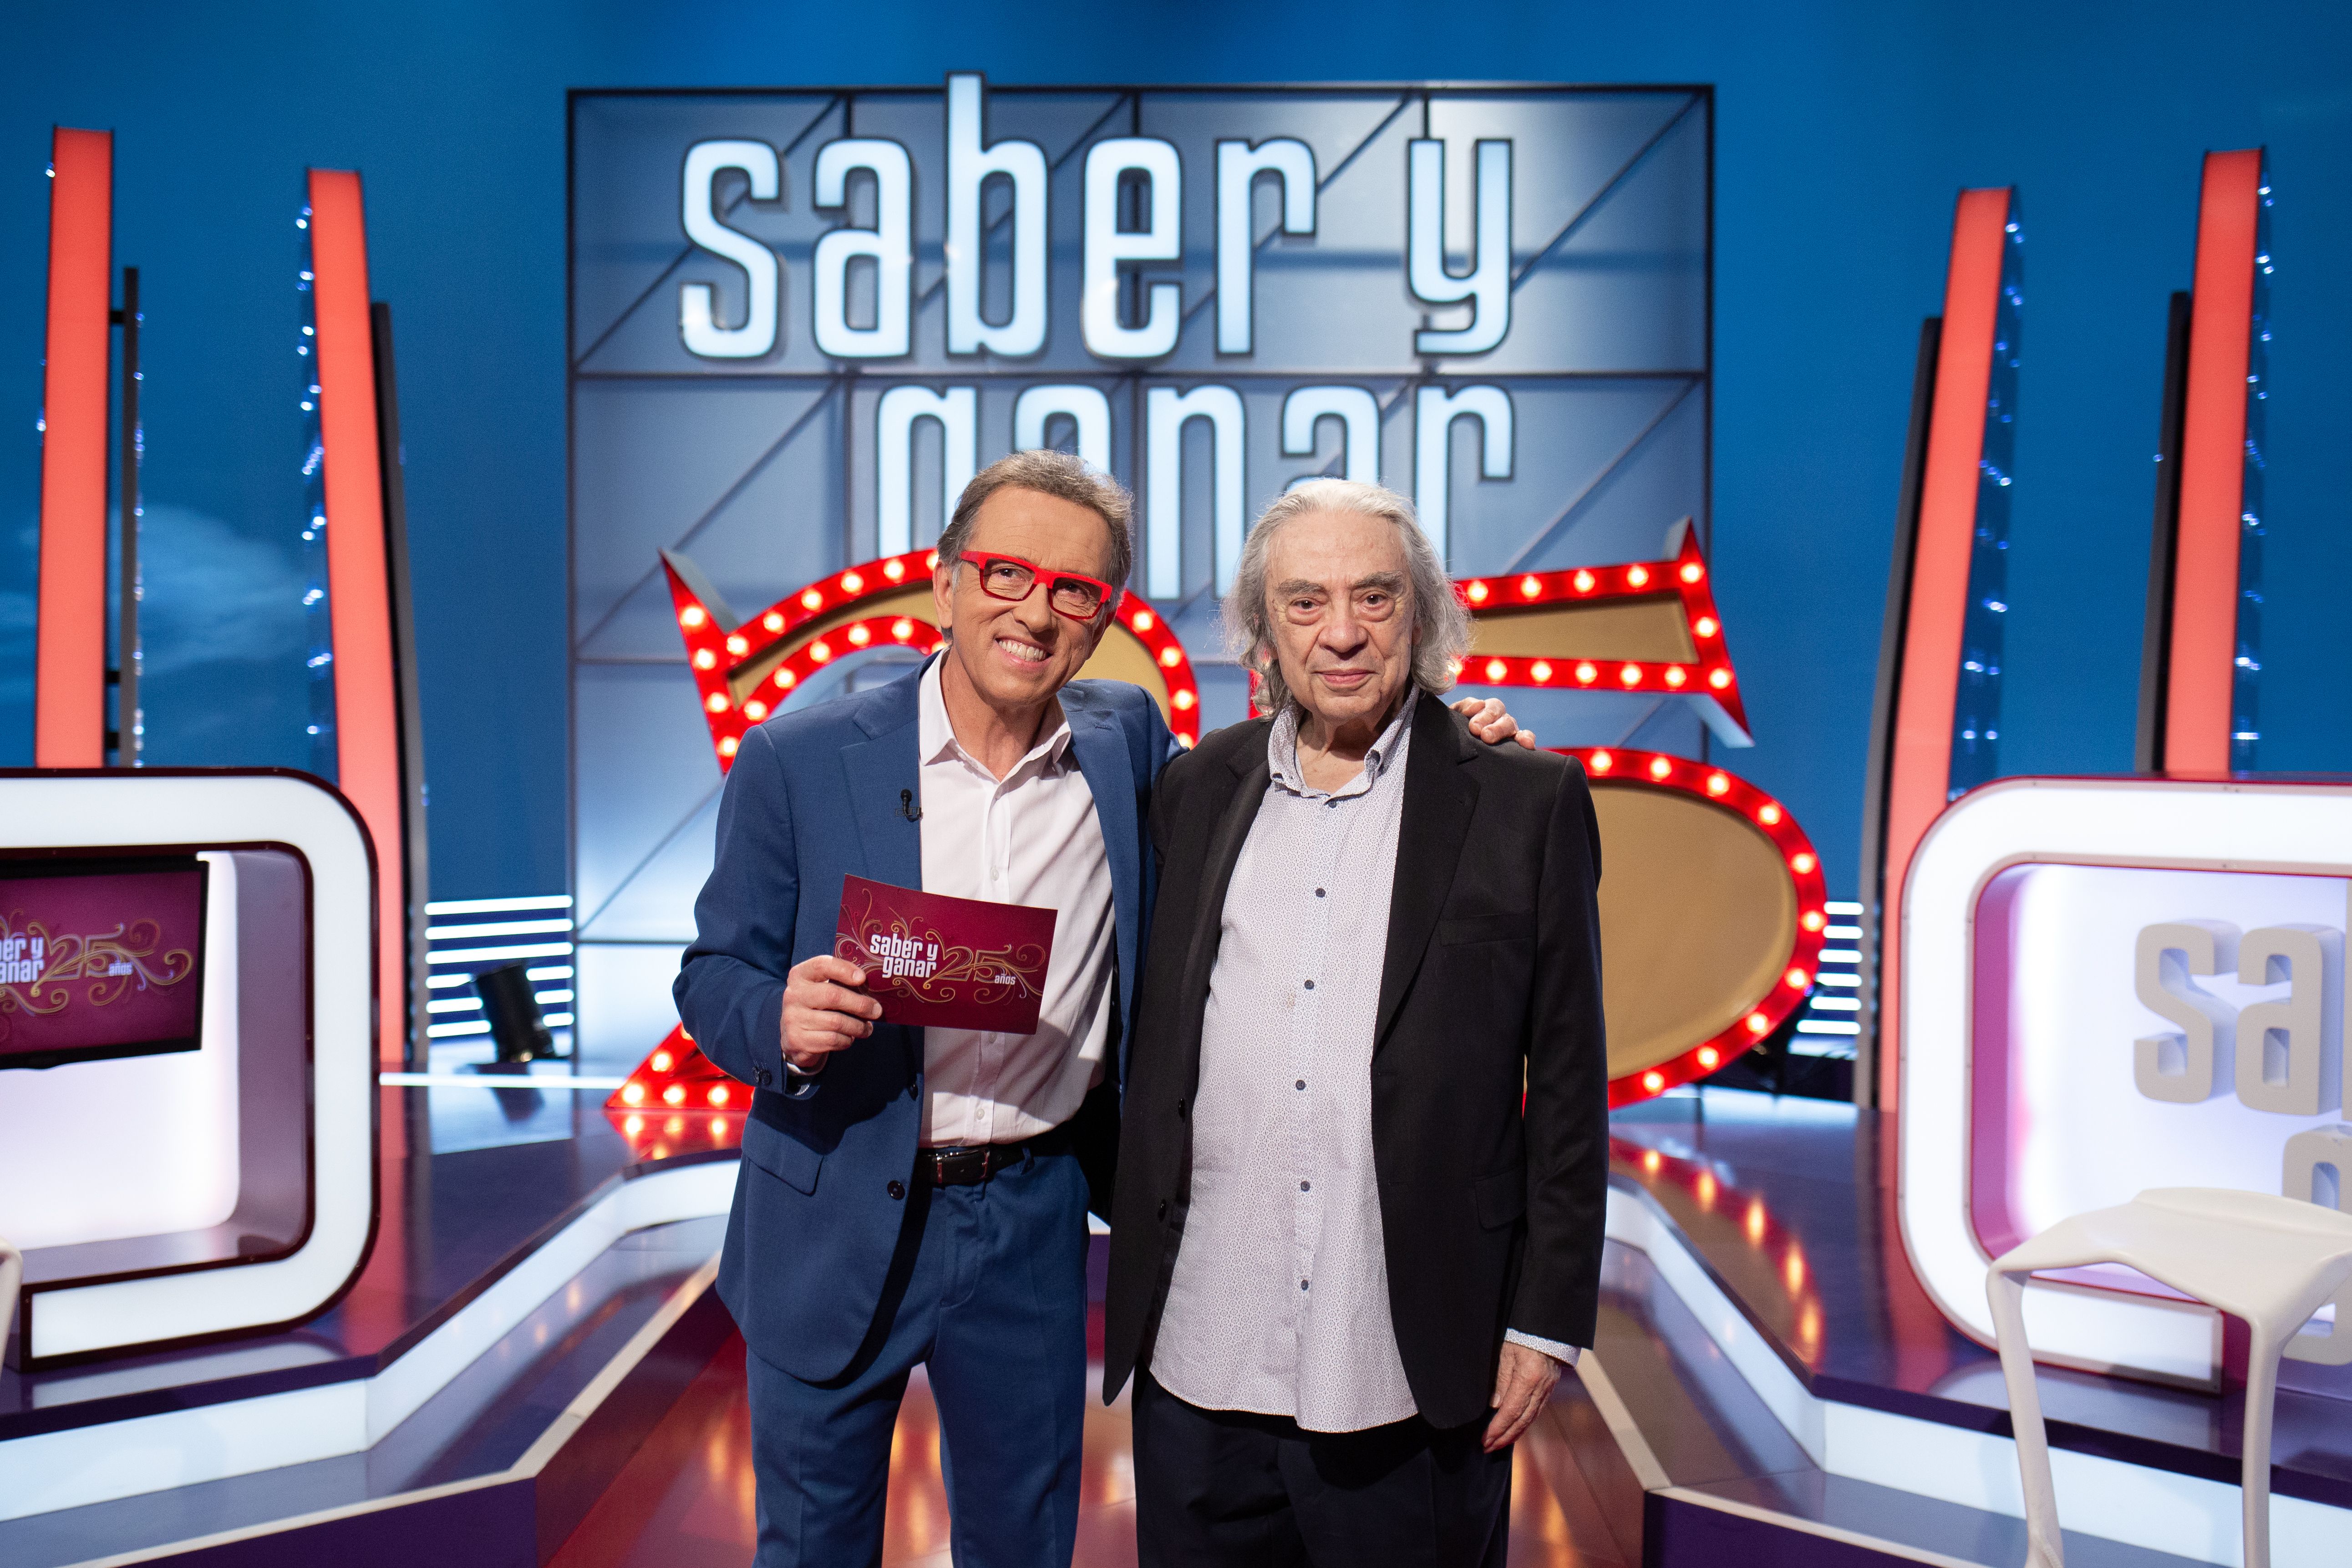 Muere Sergi Schaaff, creador de programas como 'Saber y ganar' y 'El tiempo es oro'